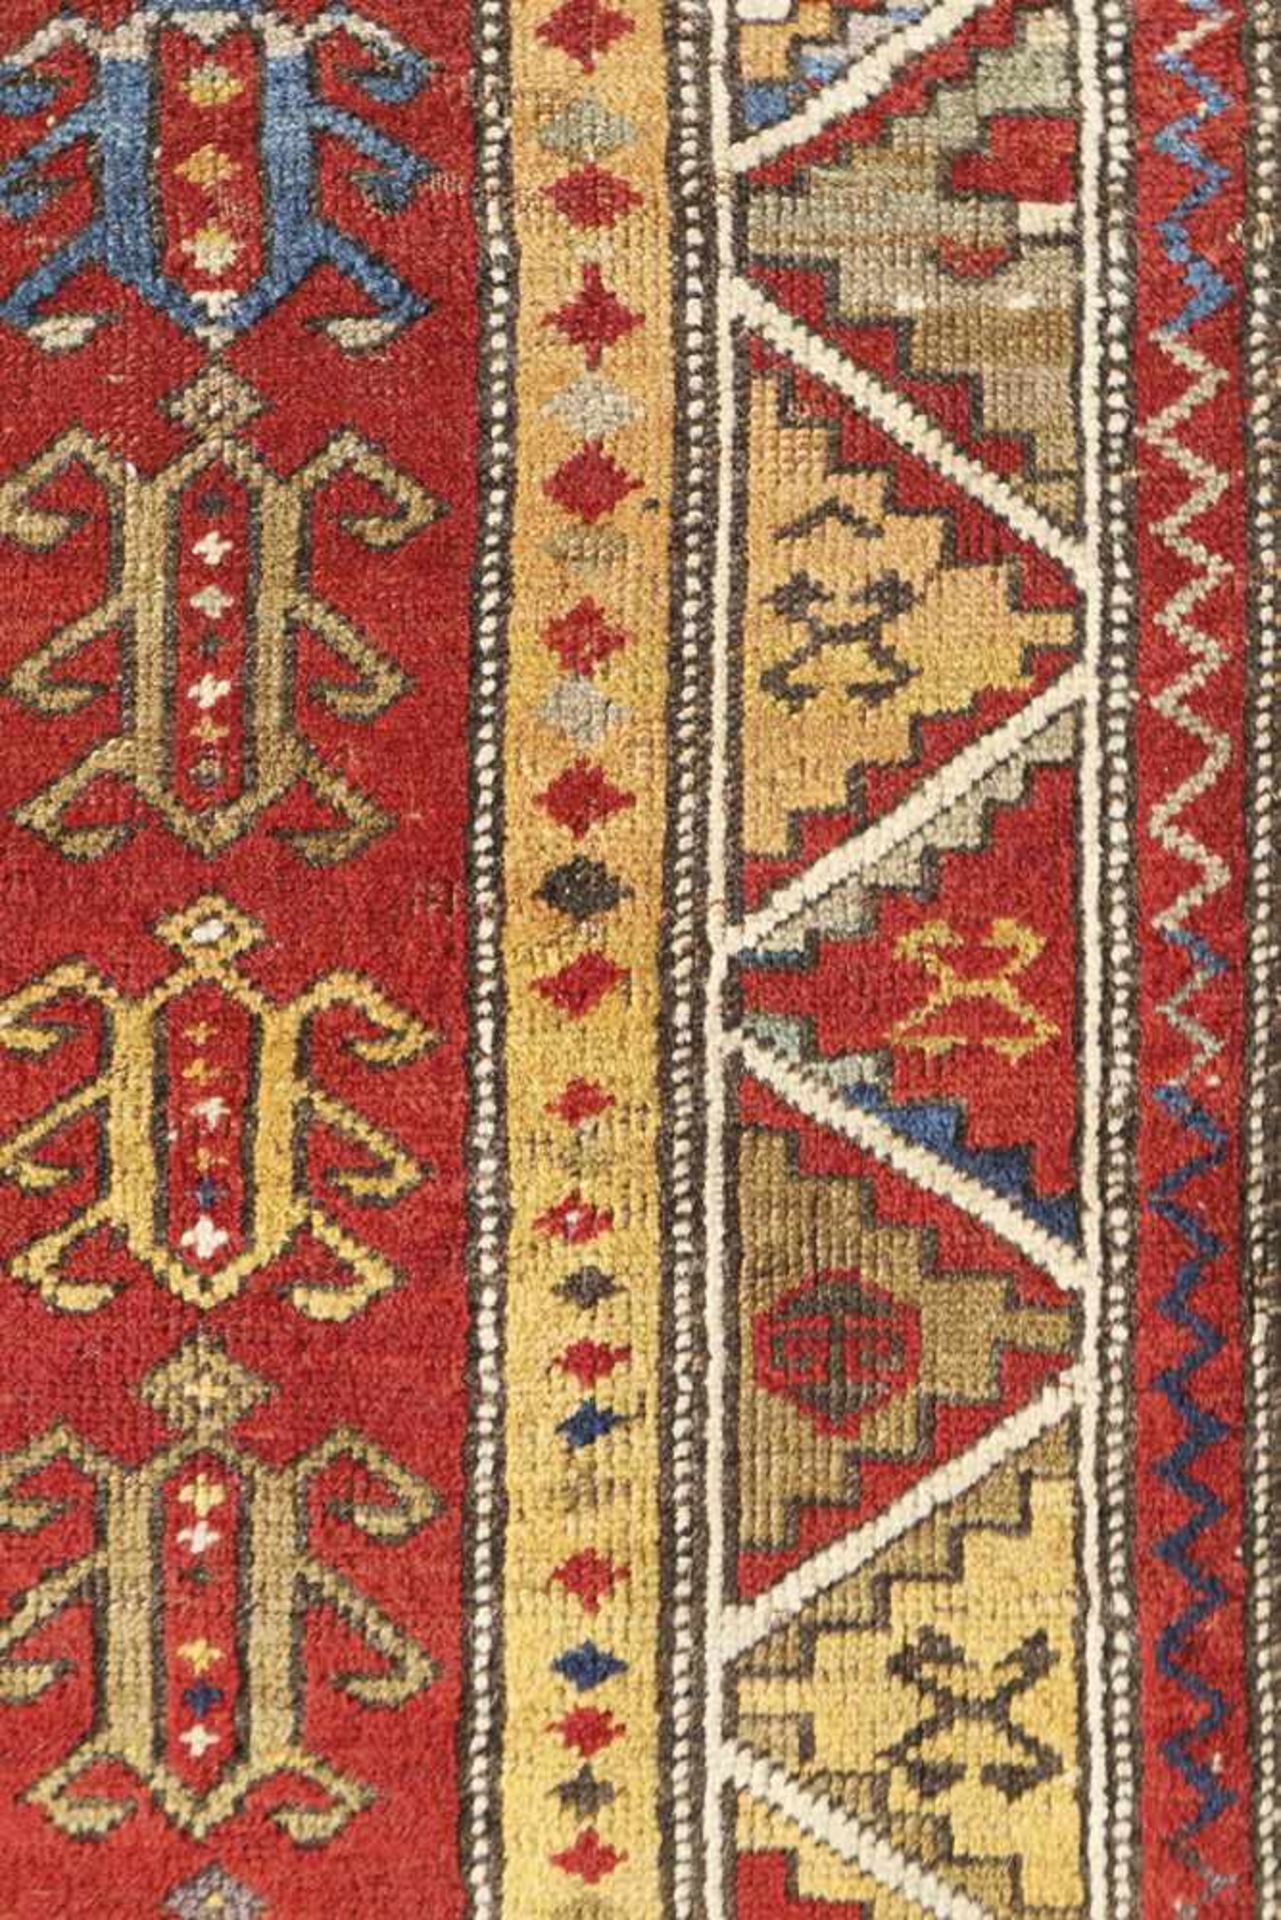 Carpet Fachralo Prayer Rug Caucasus about 1890 Carpet Fachralo prayer rug, Caucasus around 1890. - Bild 3 aus 4